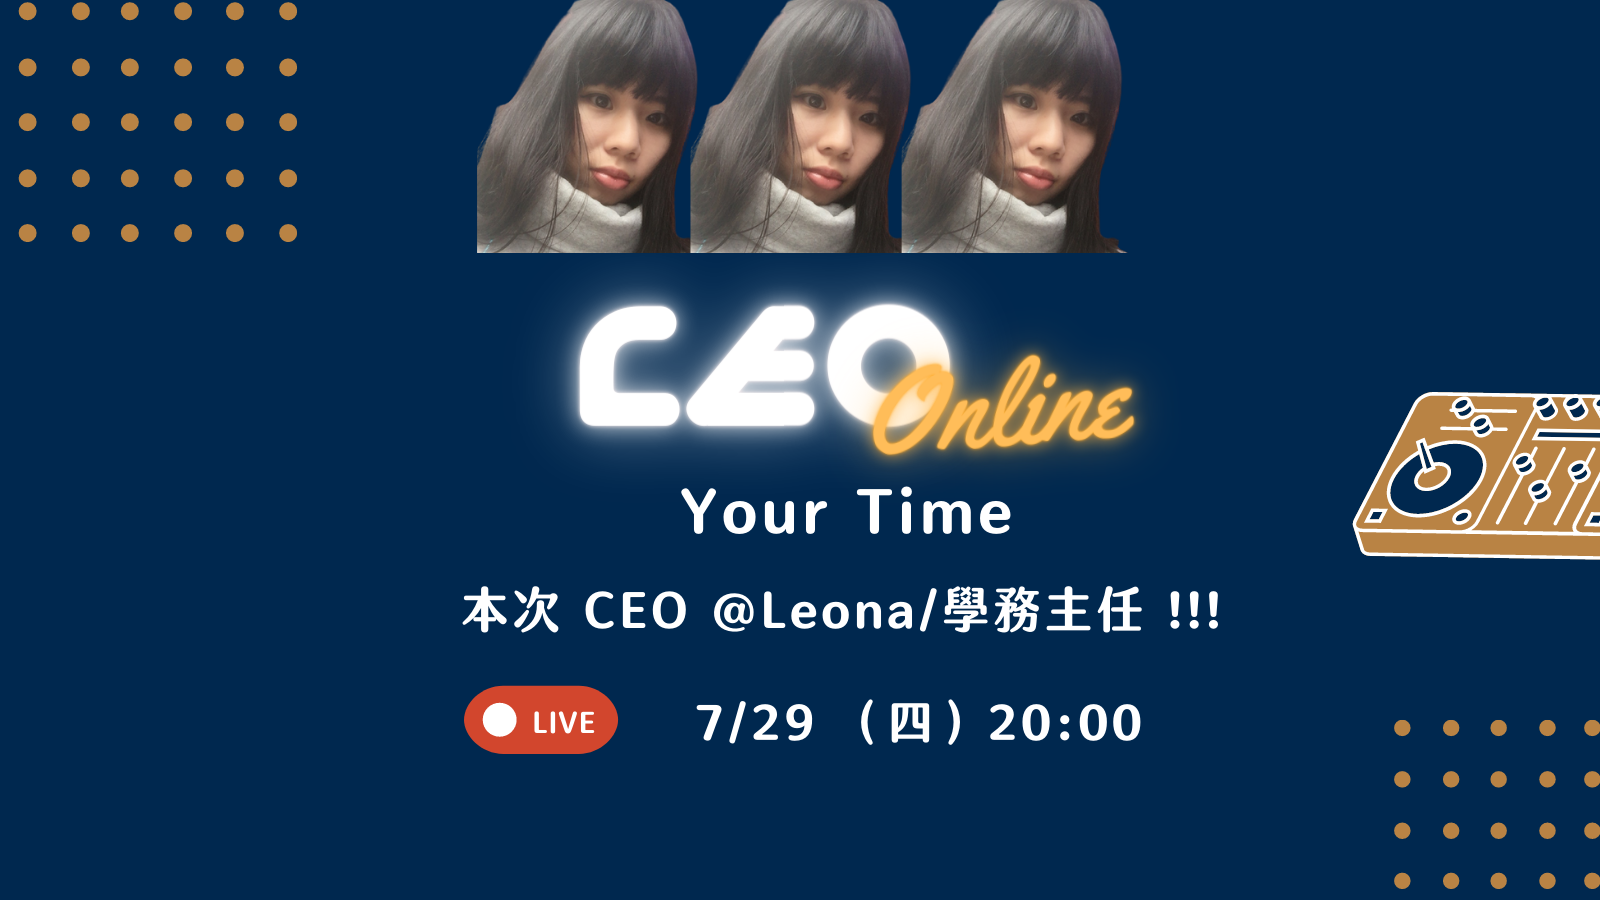 7/29 做自己生命的 CEO | Your Time!課程封面